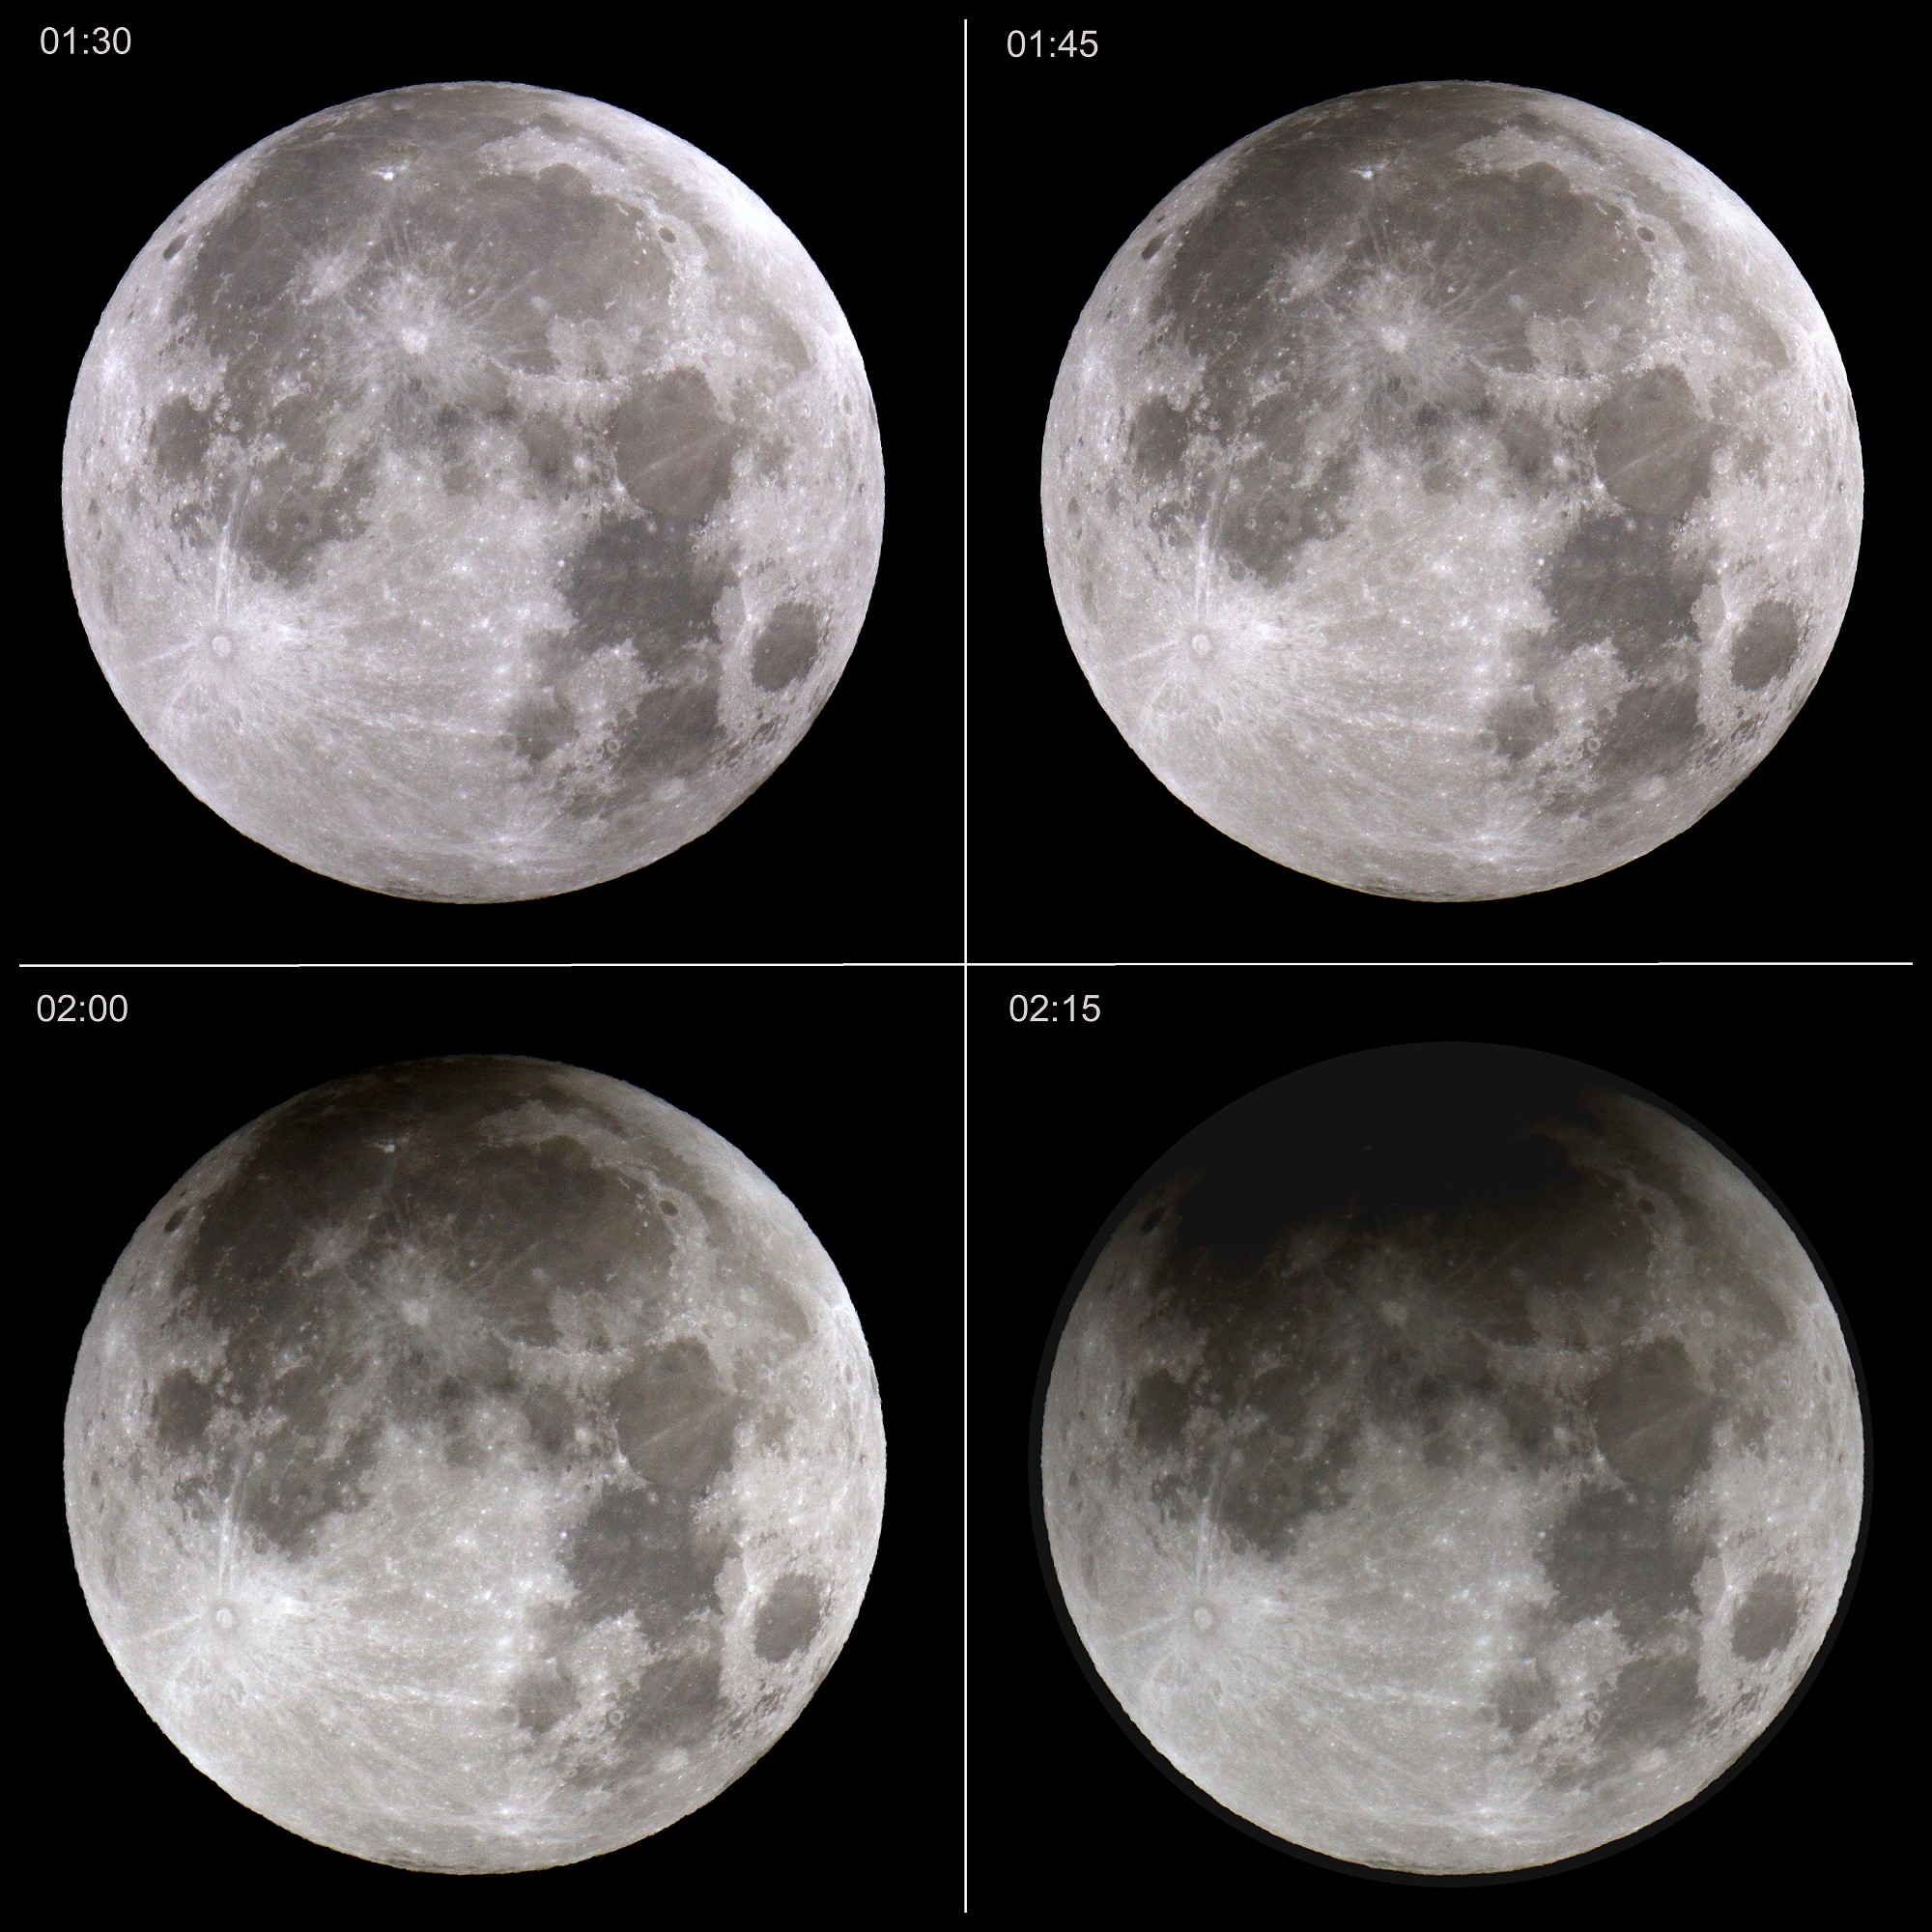 [Partial Lunar Eclipse of November 19, 2021]